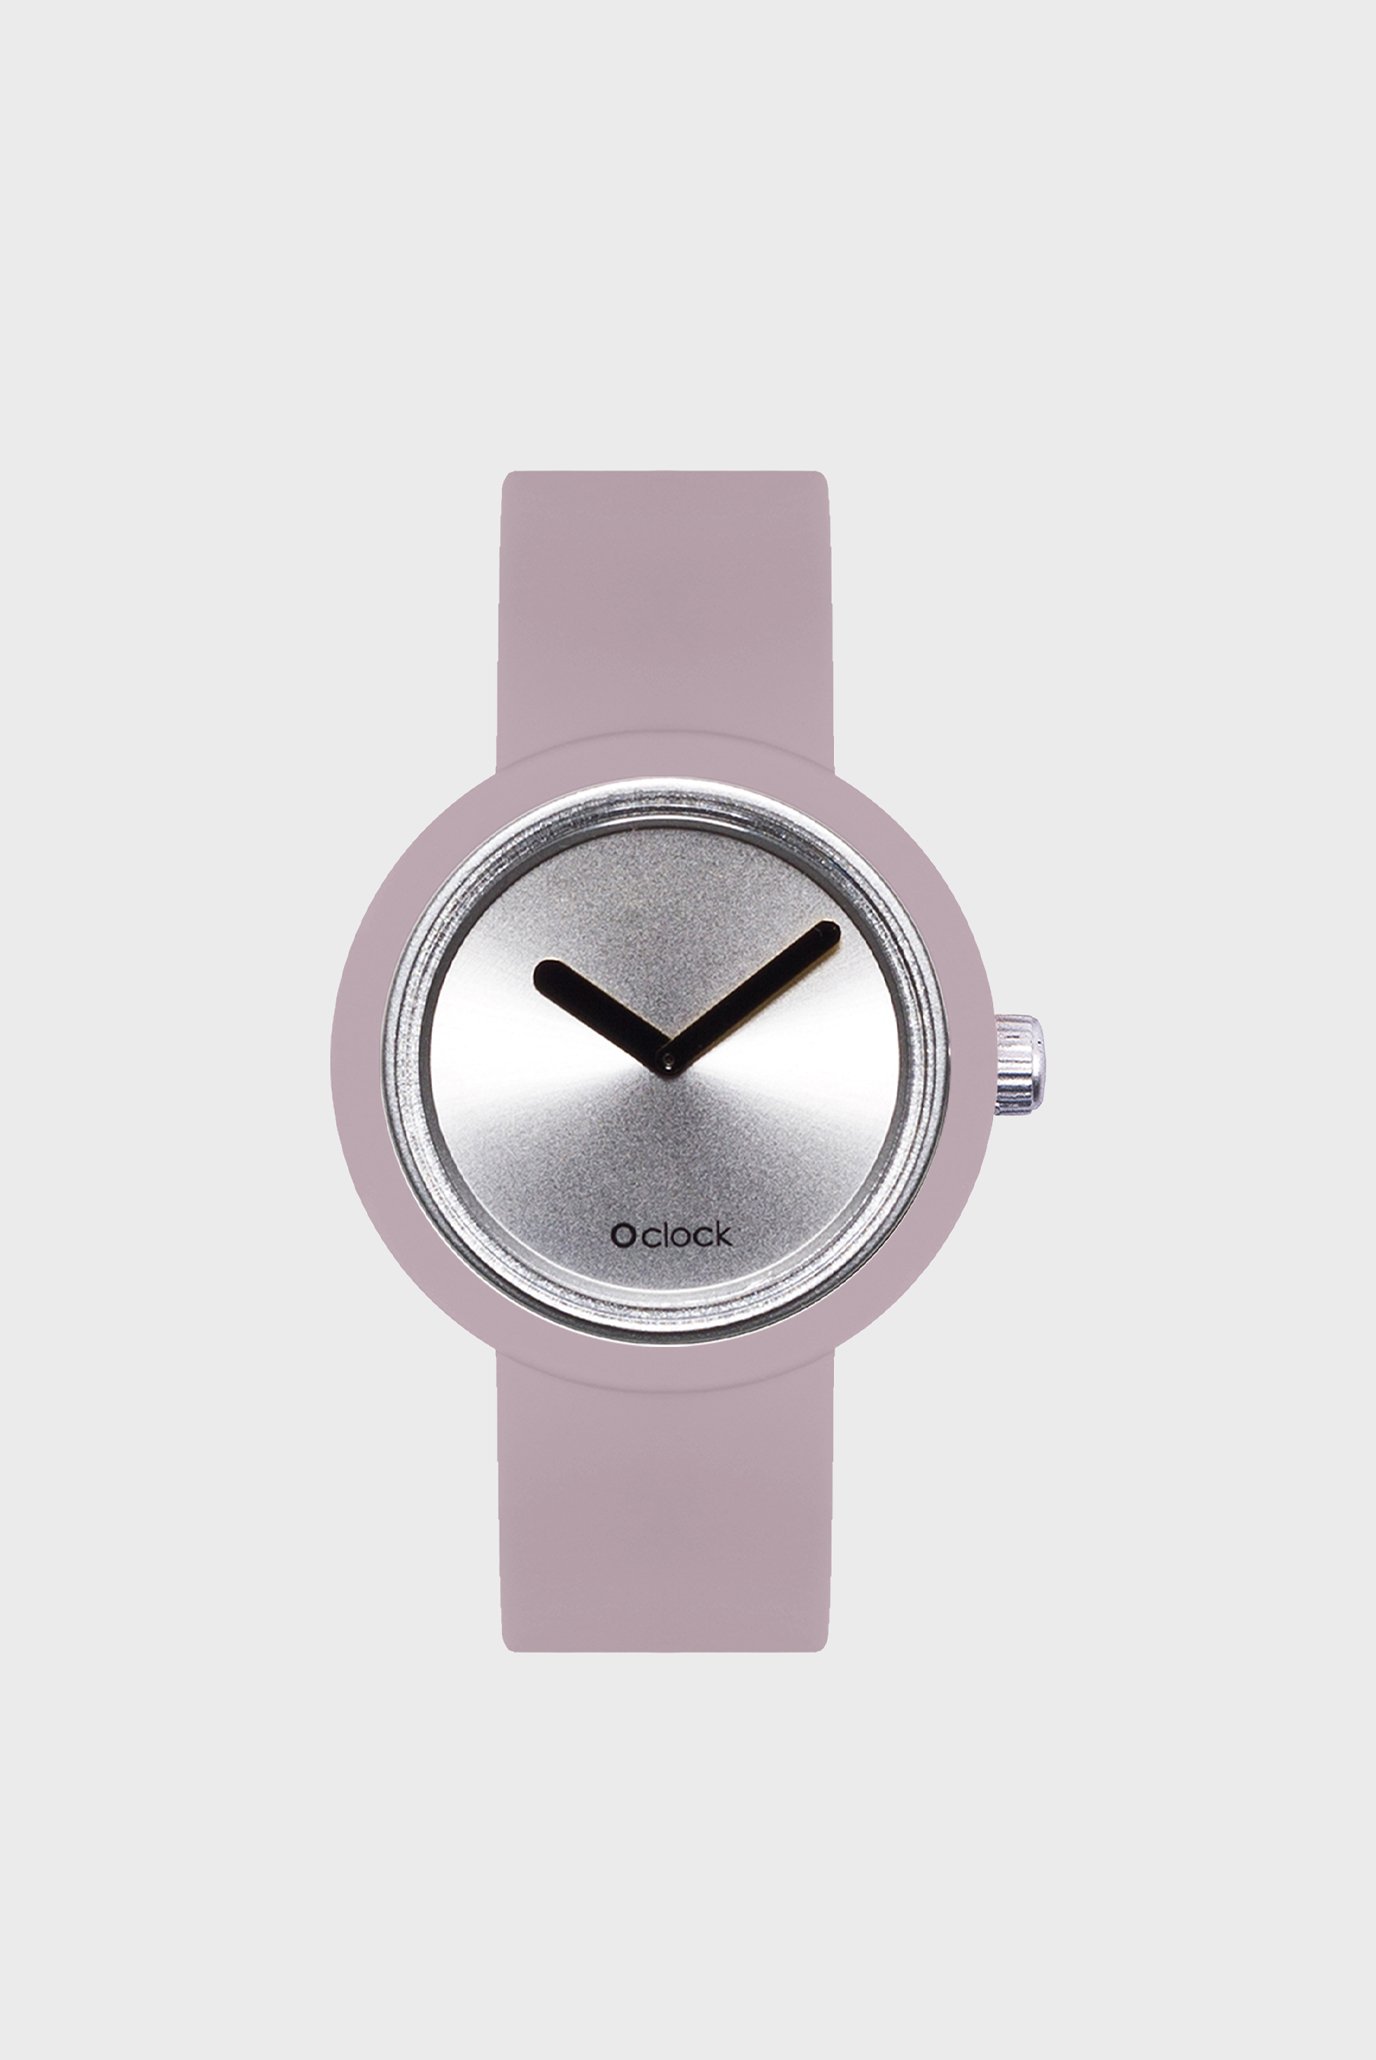 Жіночий рожевий годинник O clock 1